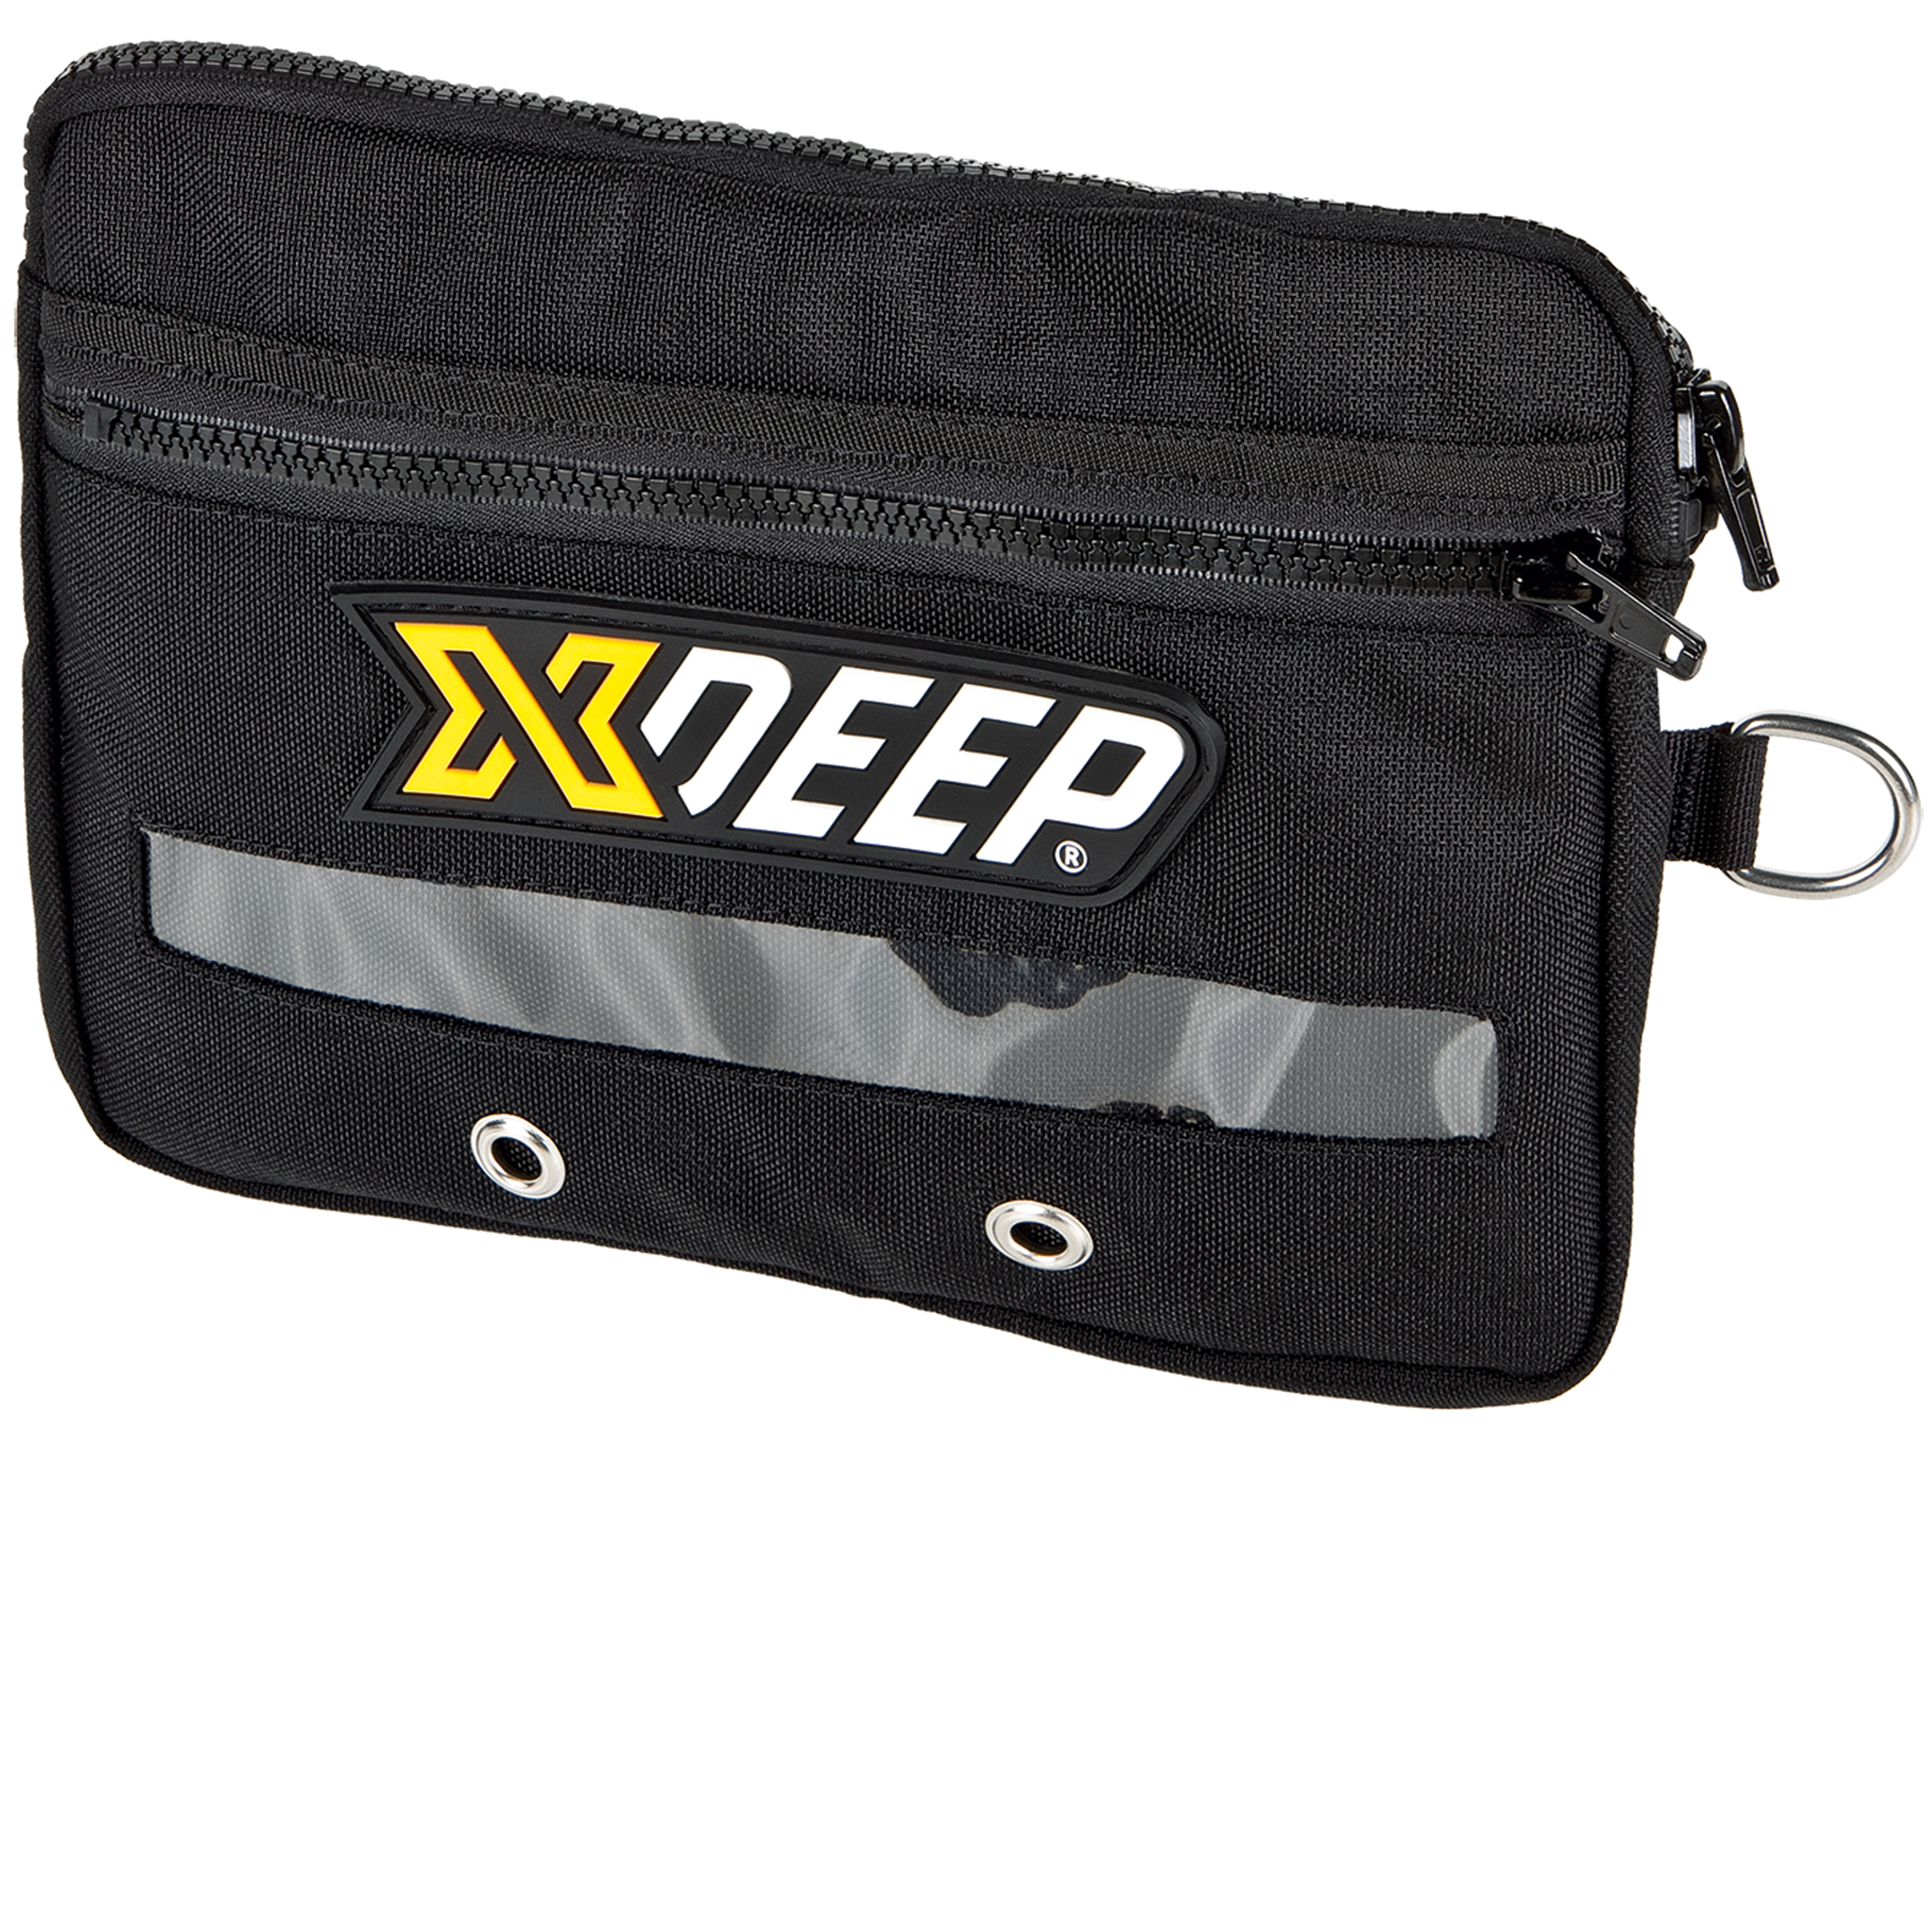 XDEEP Sidemount Tasche CAVE